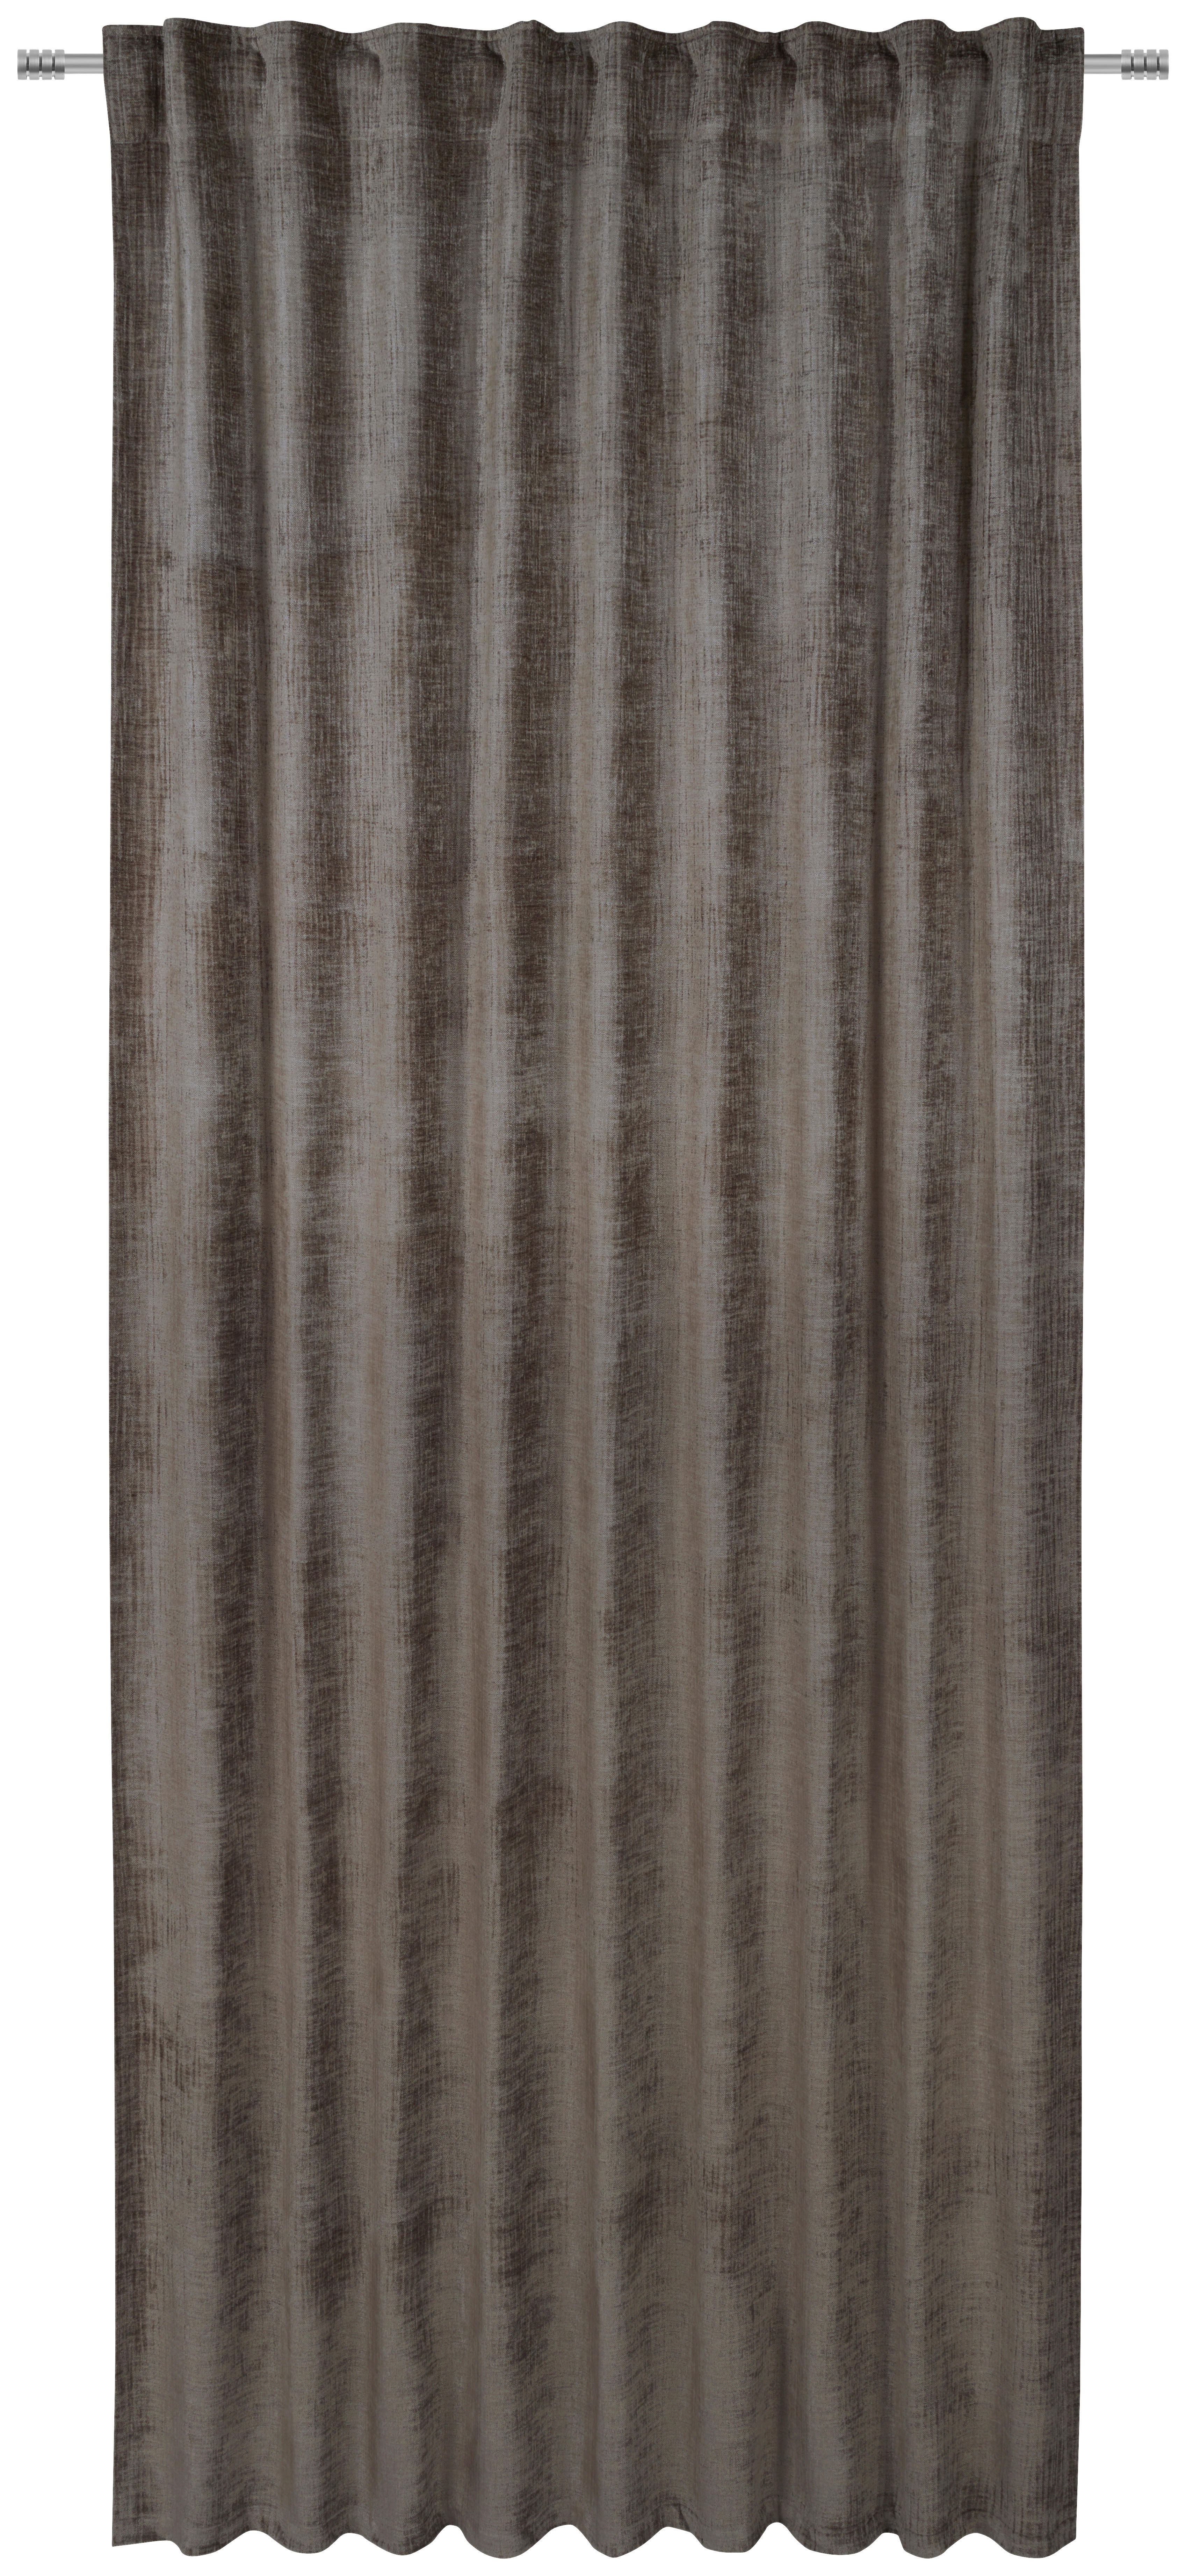 WÄRMESCHUTZVORHANG  blickdicht  145/245 cm   - Taupe, Basics, Textil (145/245cm) - Esposa